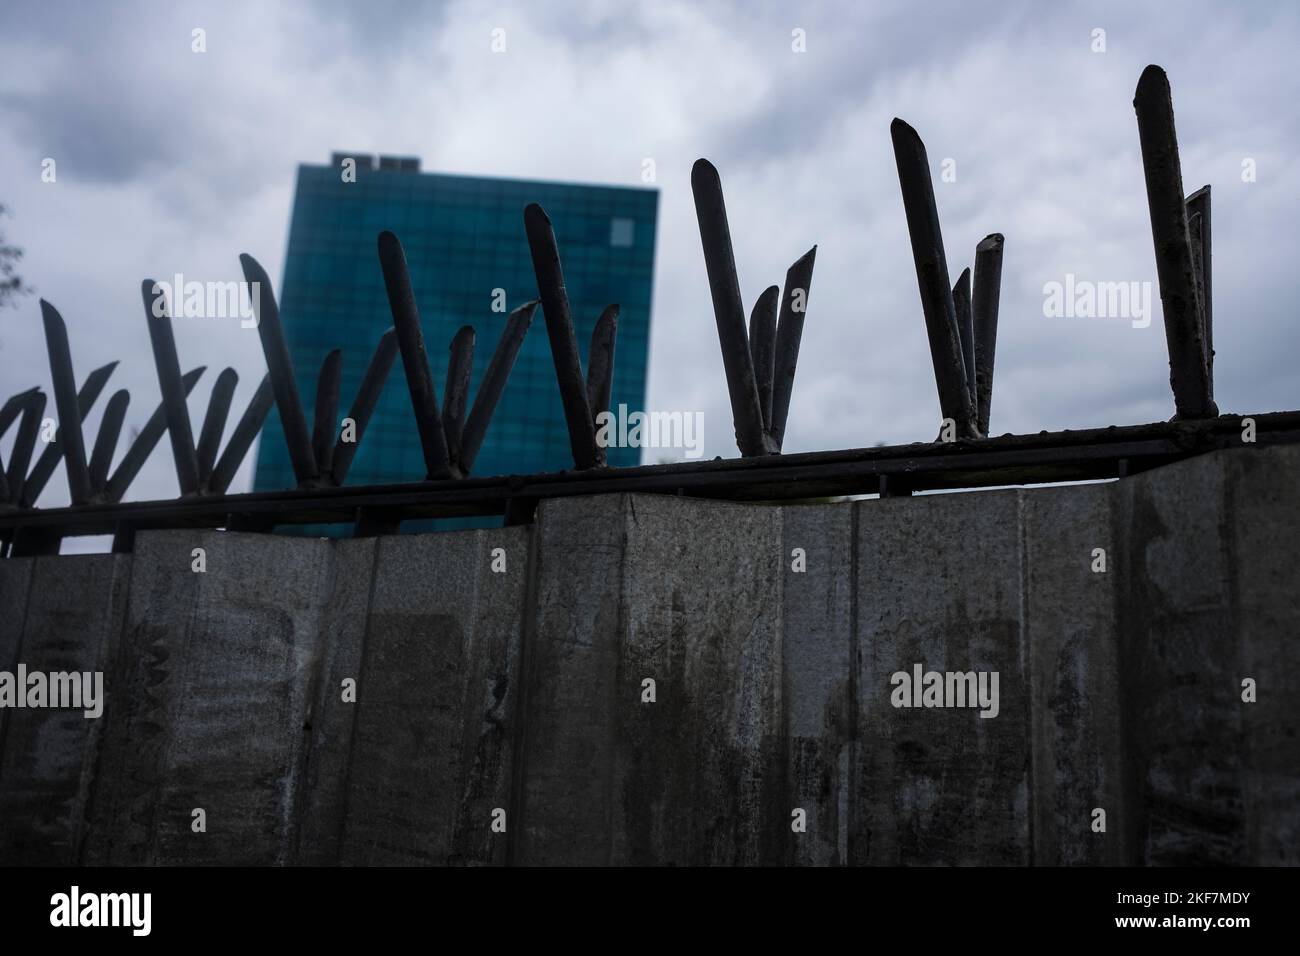 Spitzer Zaun über der Wand schützt Unternehmensgebäude, Vorsorge gegen städtische Gewalt, Bundesstaat Rio de Janeiro, Brasilien. Stockfoto